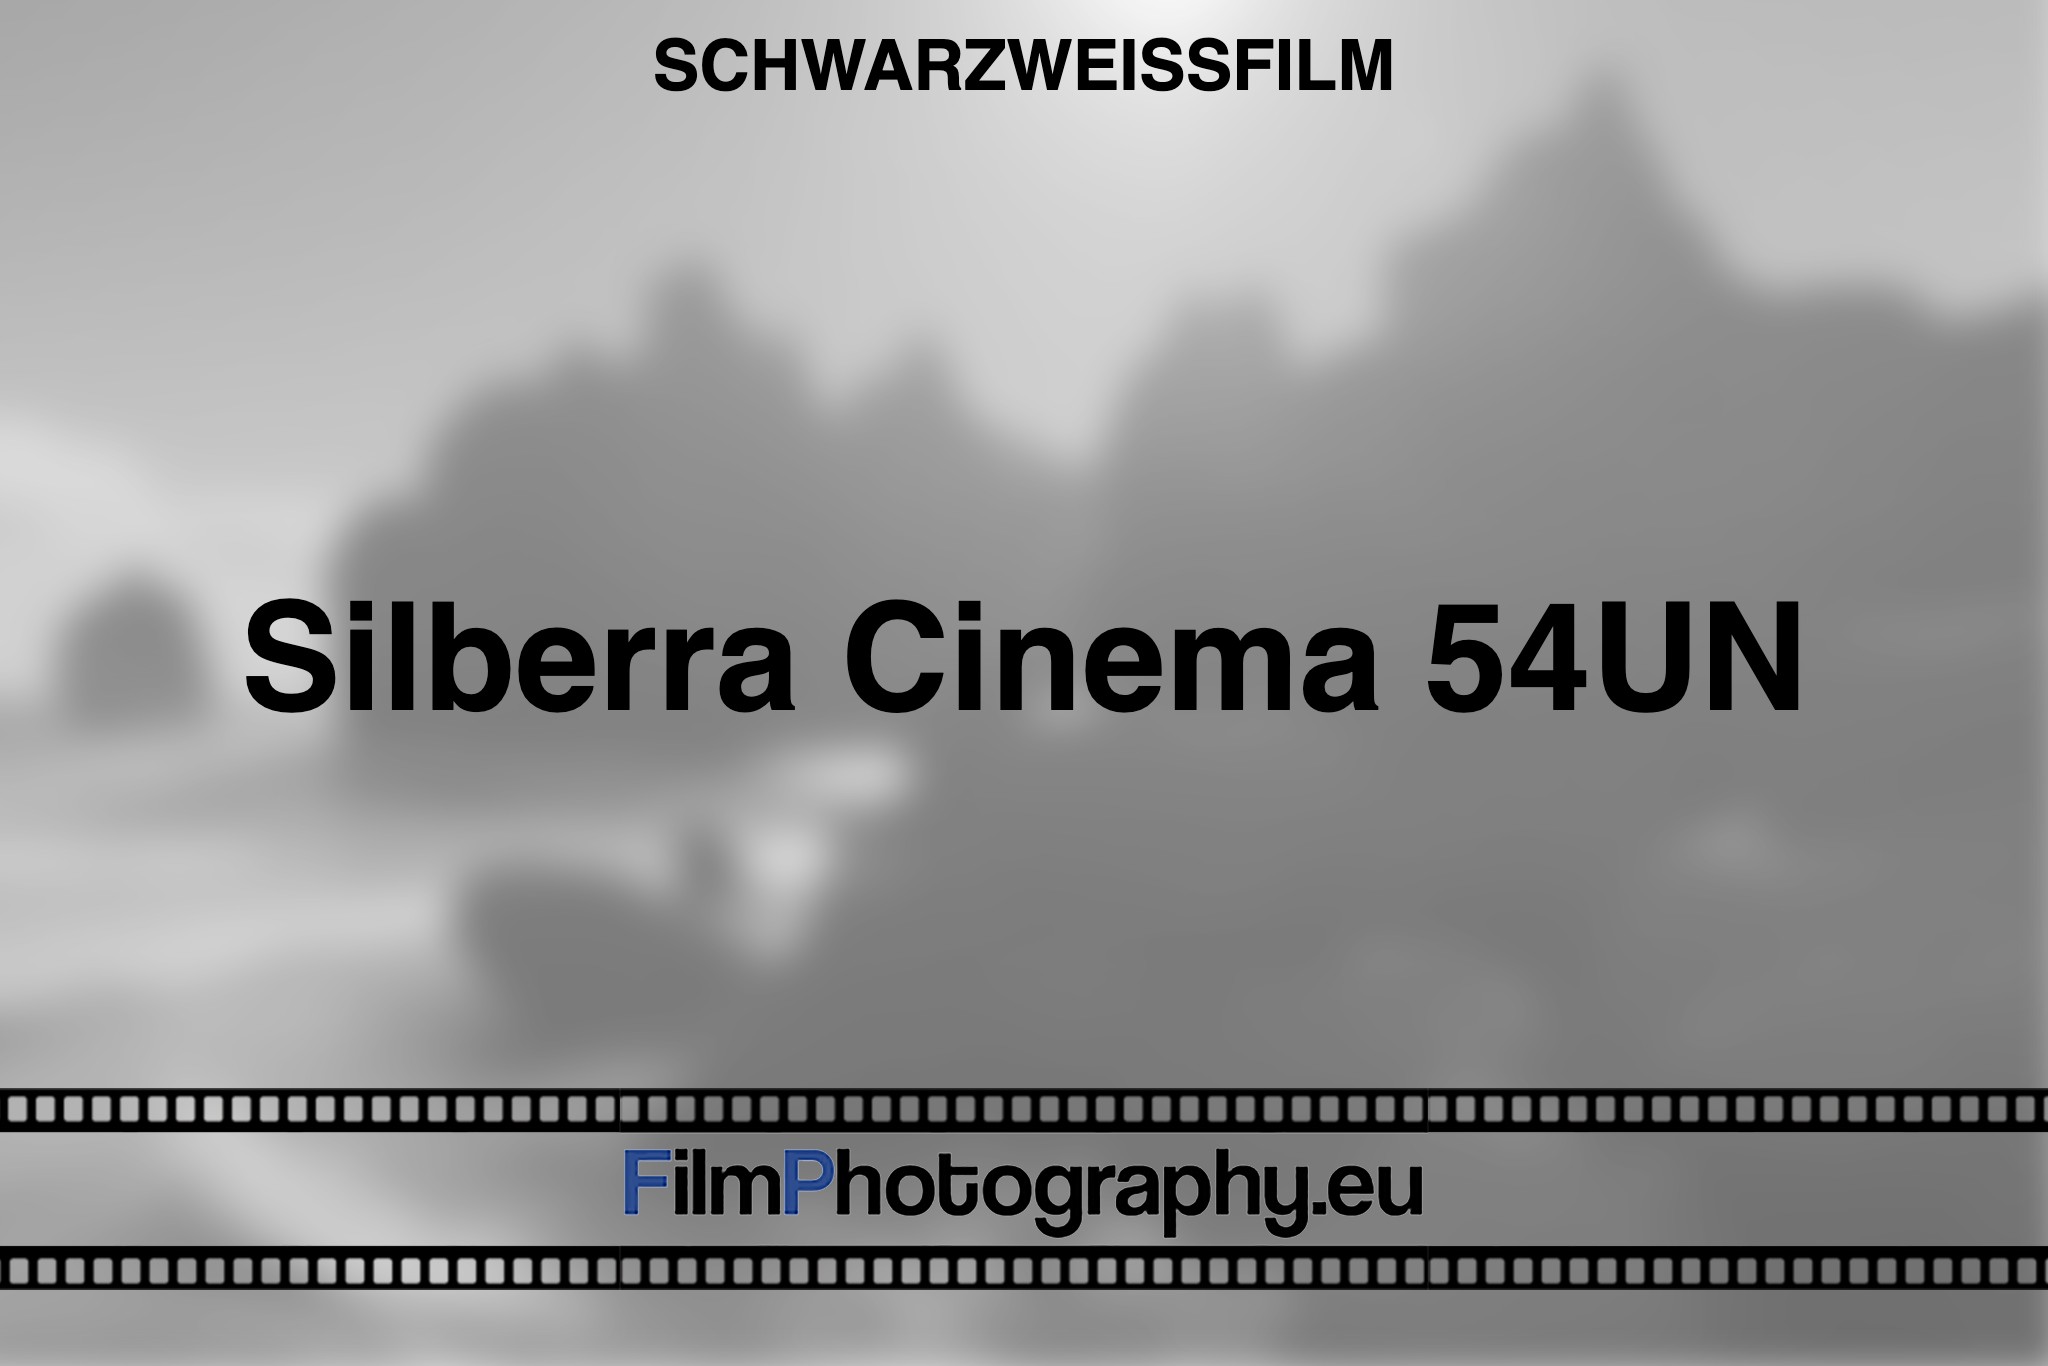 silberra-cinema-54un-schwarzweißfilm-bnv